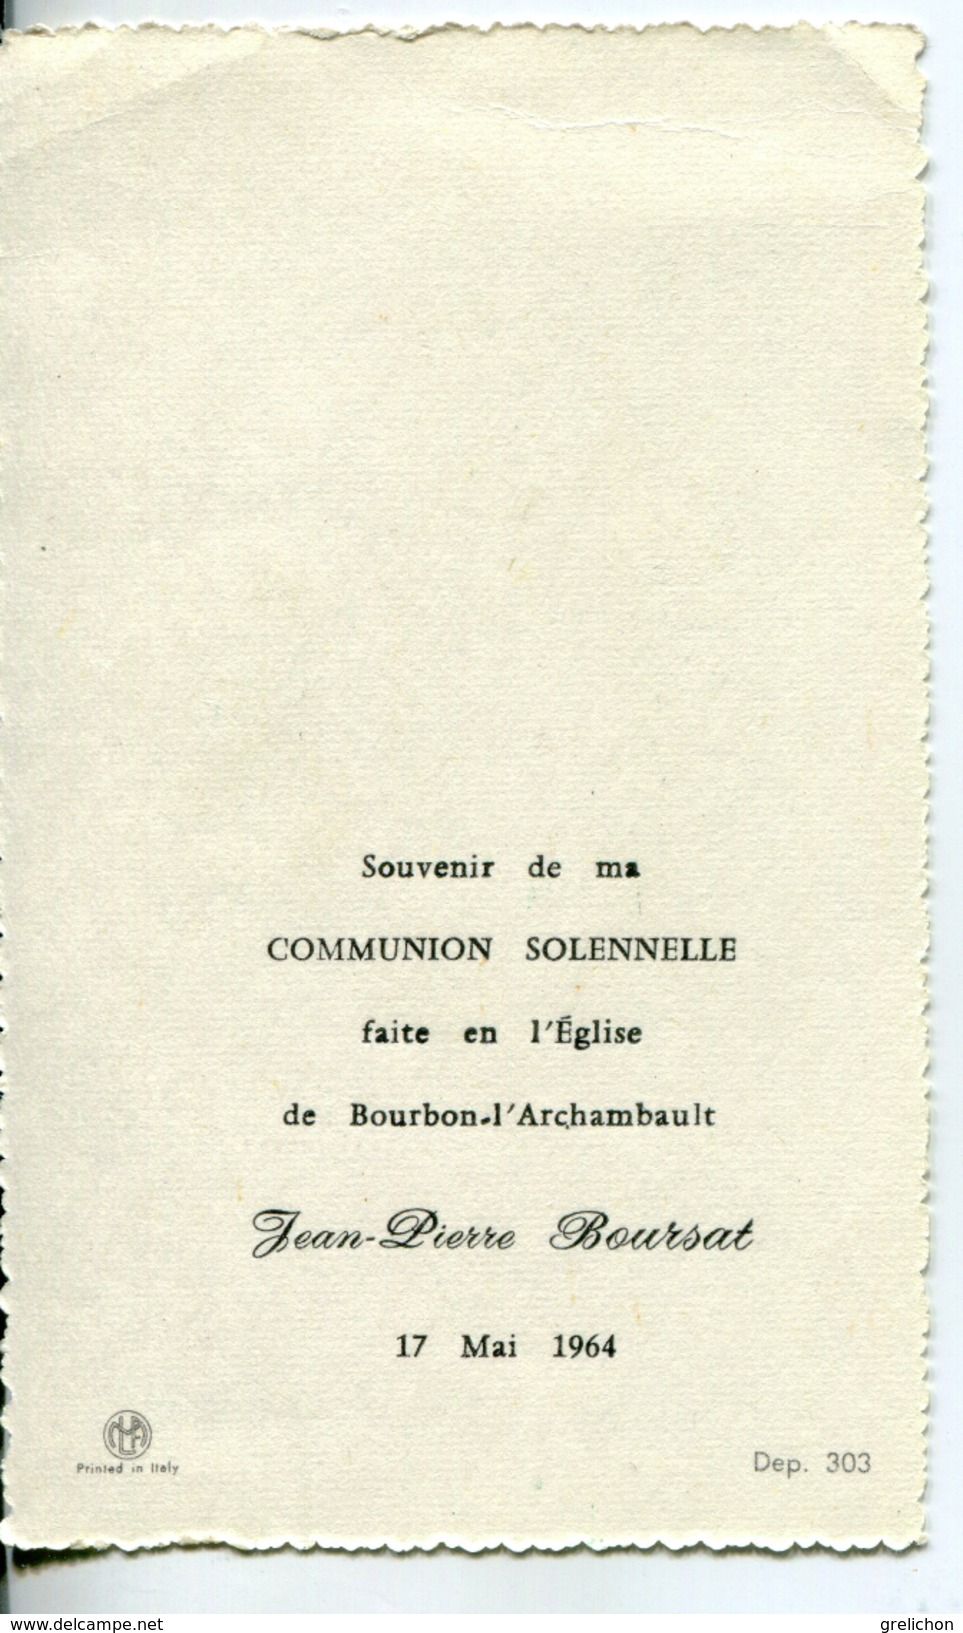 Communion Solennelle Jean Pierre Boursat - Communion